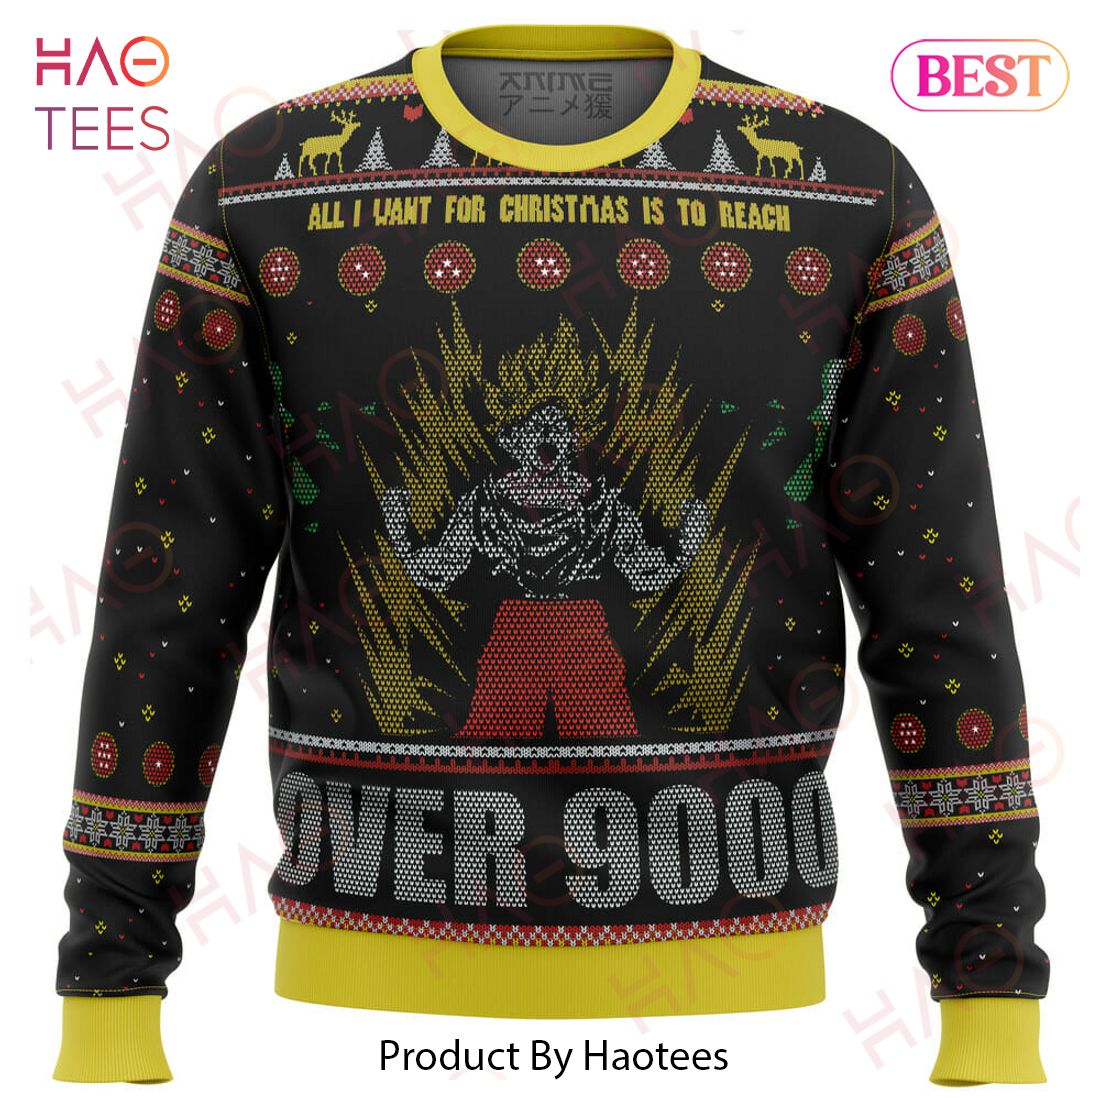 Dragonball Z Goku Over 9000 Ugly Christmas Sweater